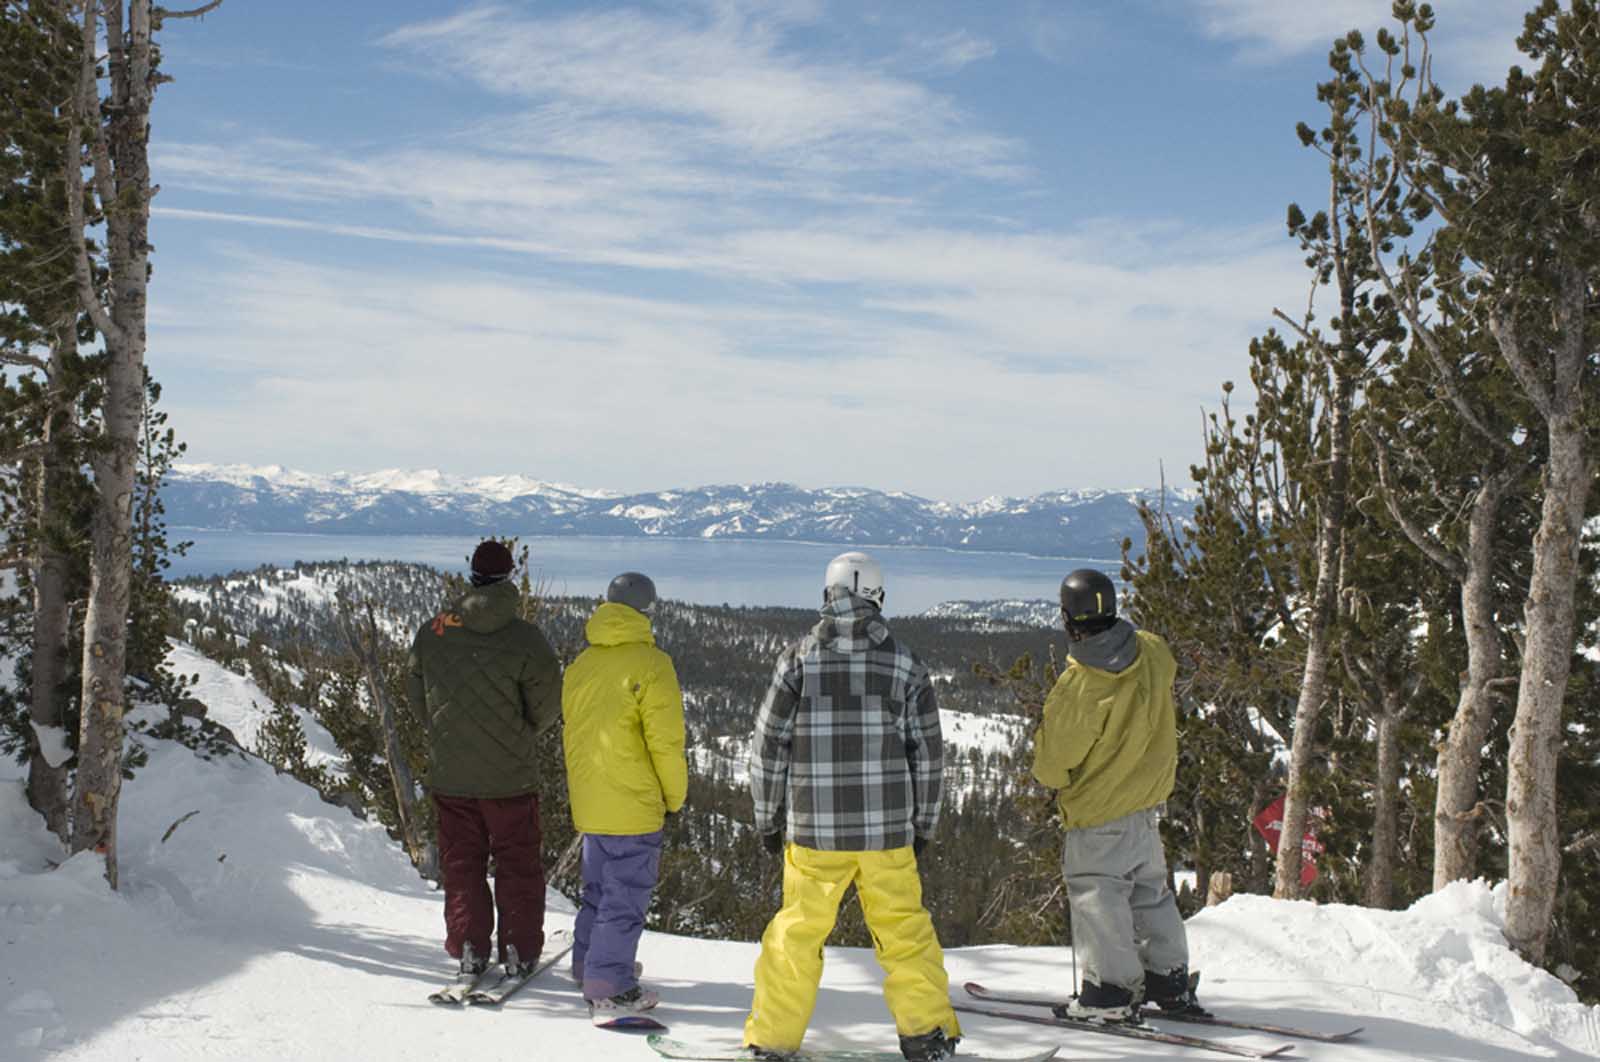 Best Things to do in Reno Nevada Mount Rose Ski Resort